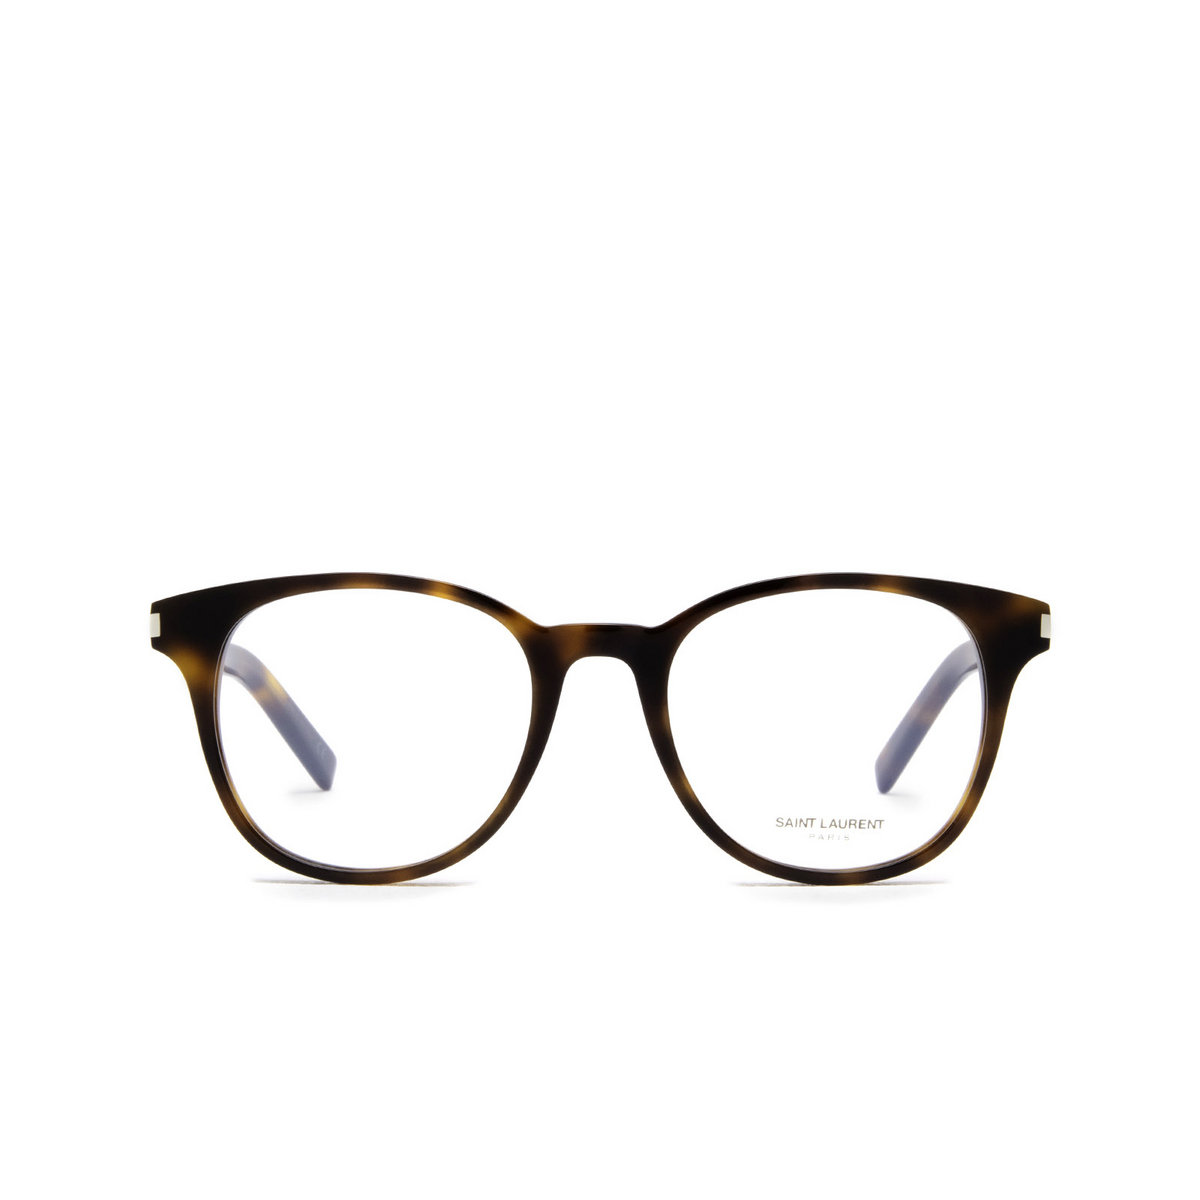 Saint Laurent® Round Eyeglasses: SL 523 color 002 Havana - front view